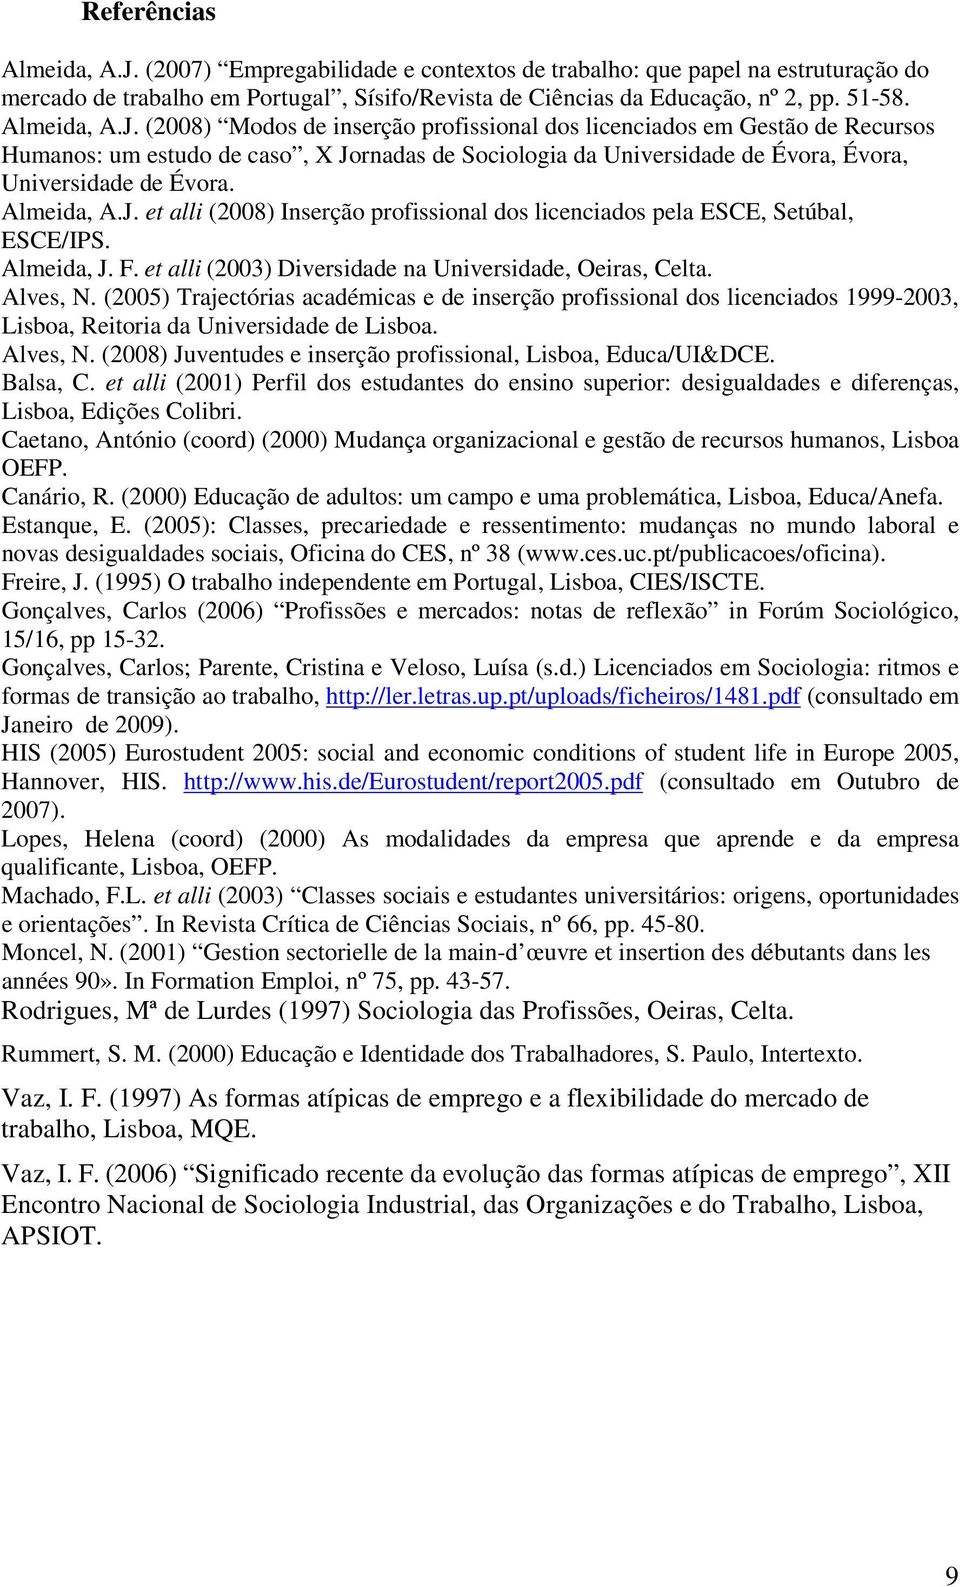 Almeida, A.J. et alli (2008) Inserção profissional dos licenciados pela ESCE, Setúbal, ESCE/IPS. Almeida, J. F. et alli (2003) Diversidade na Universidade, Oeiras, Celta. Alves, N.